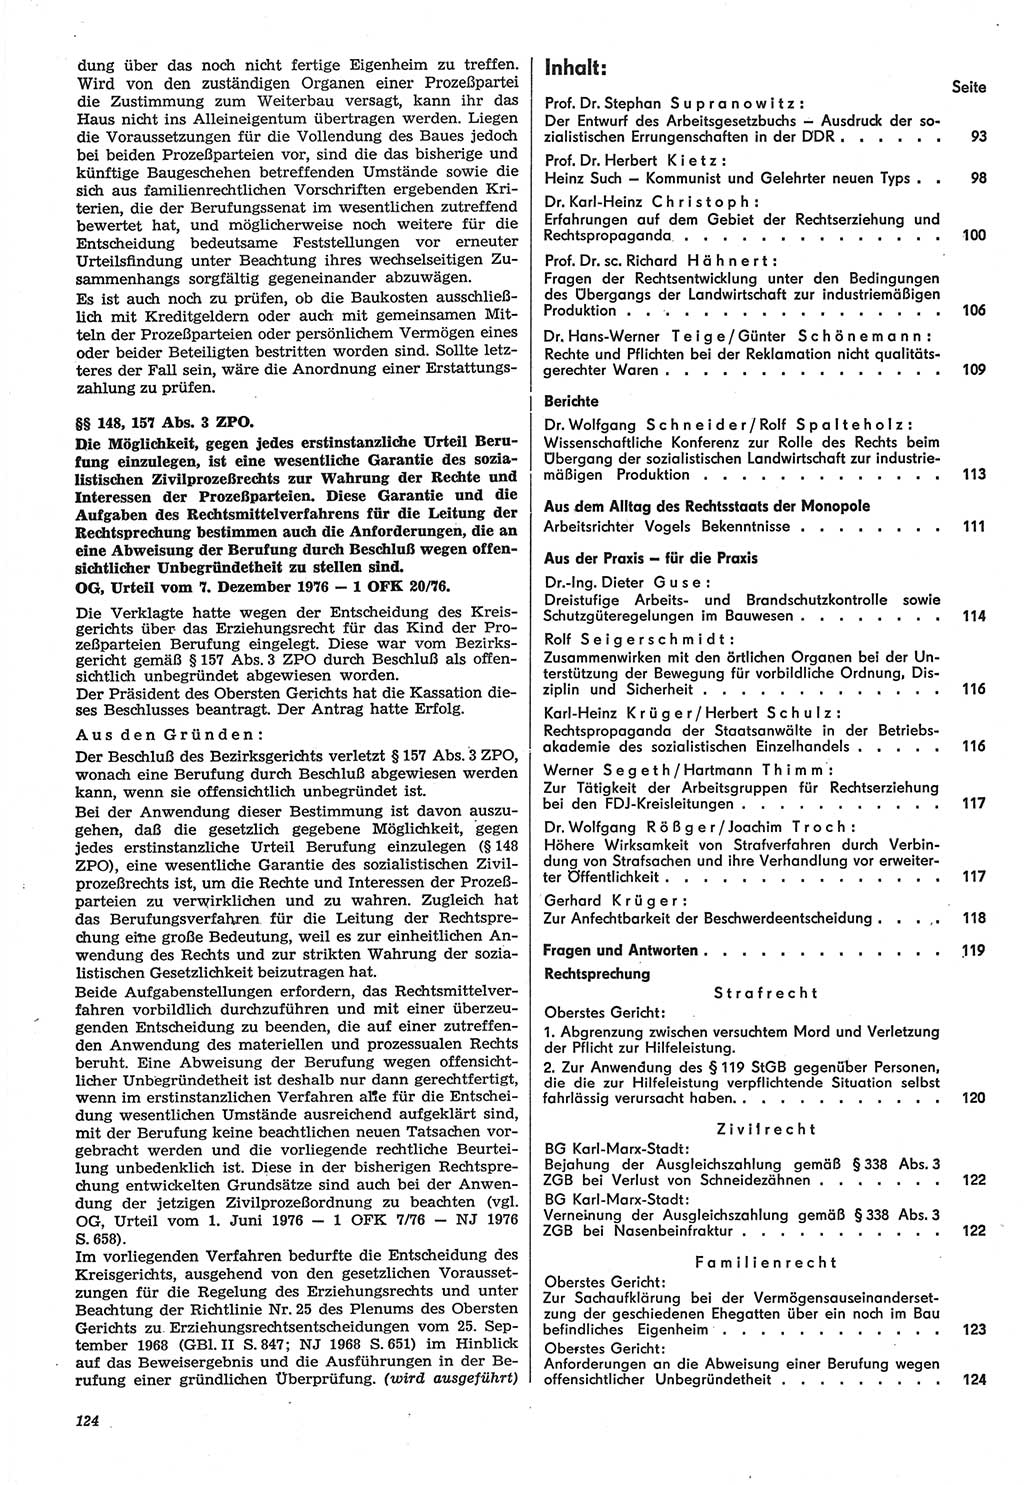 Neue Justiz (NJ), Zeitschrift für Recht und Rechtswissenschaft-Zeitschrift, sozialistisches Recht und Gesetzlichkeit, 31. Jahrgang 1977, Seite 124 (NJ DDR 1977, S. 124)